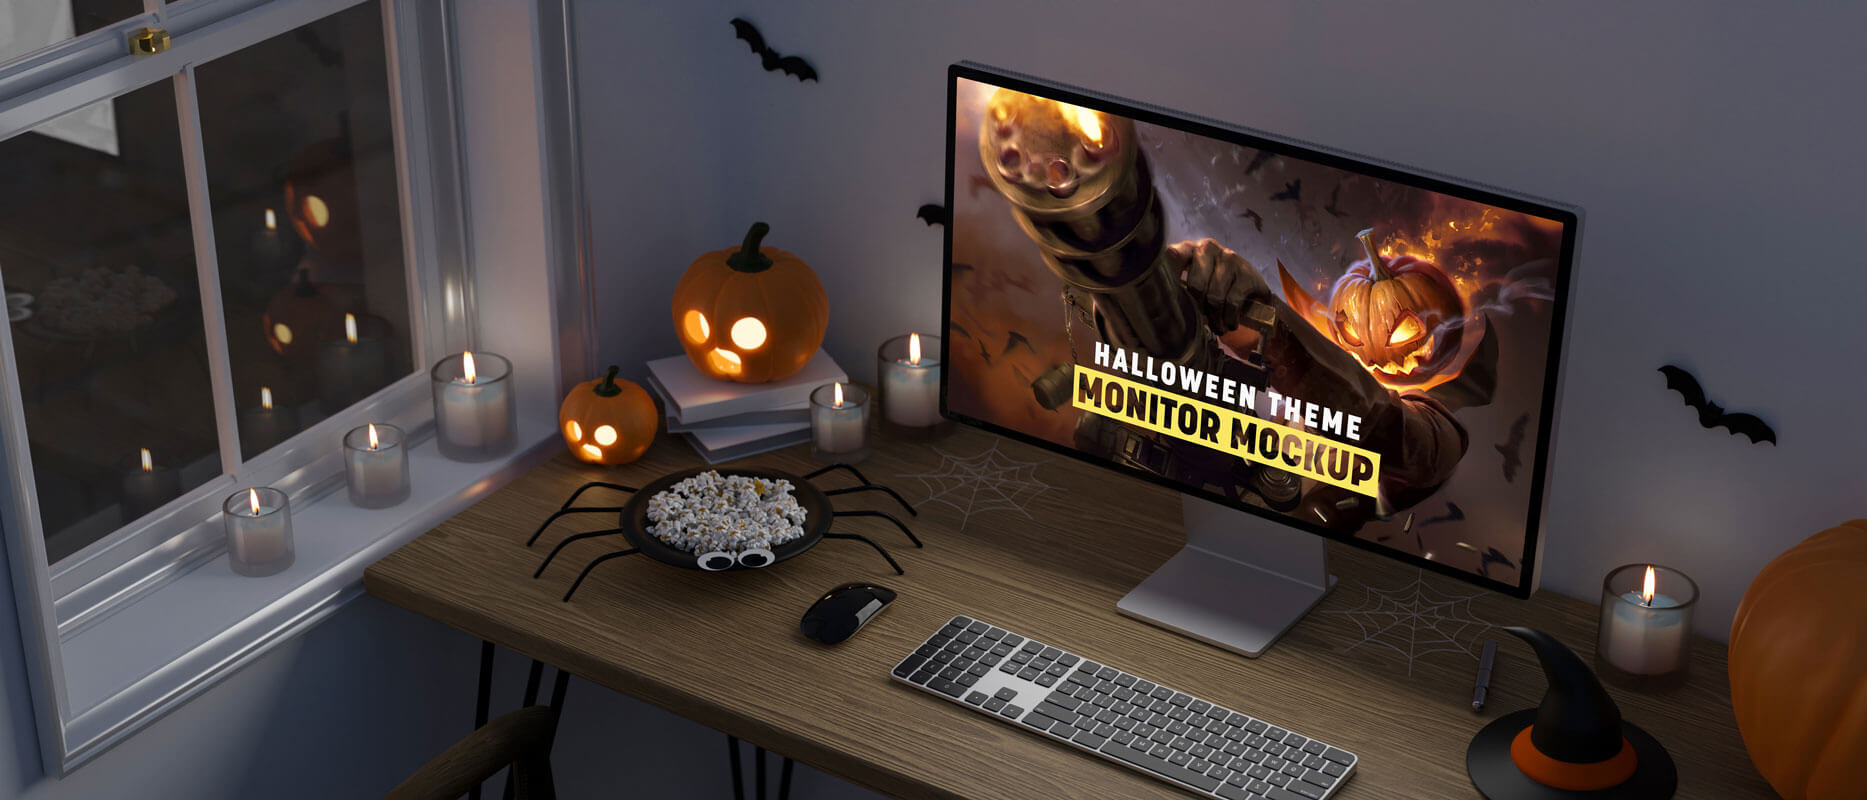 Maqueta de monitor de temas de Halloween